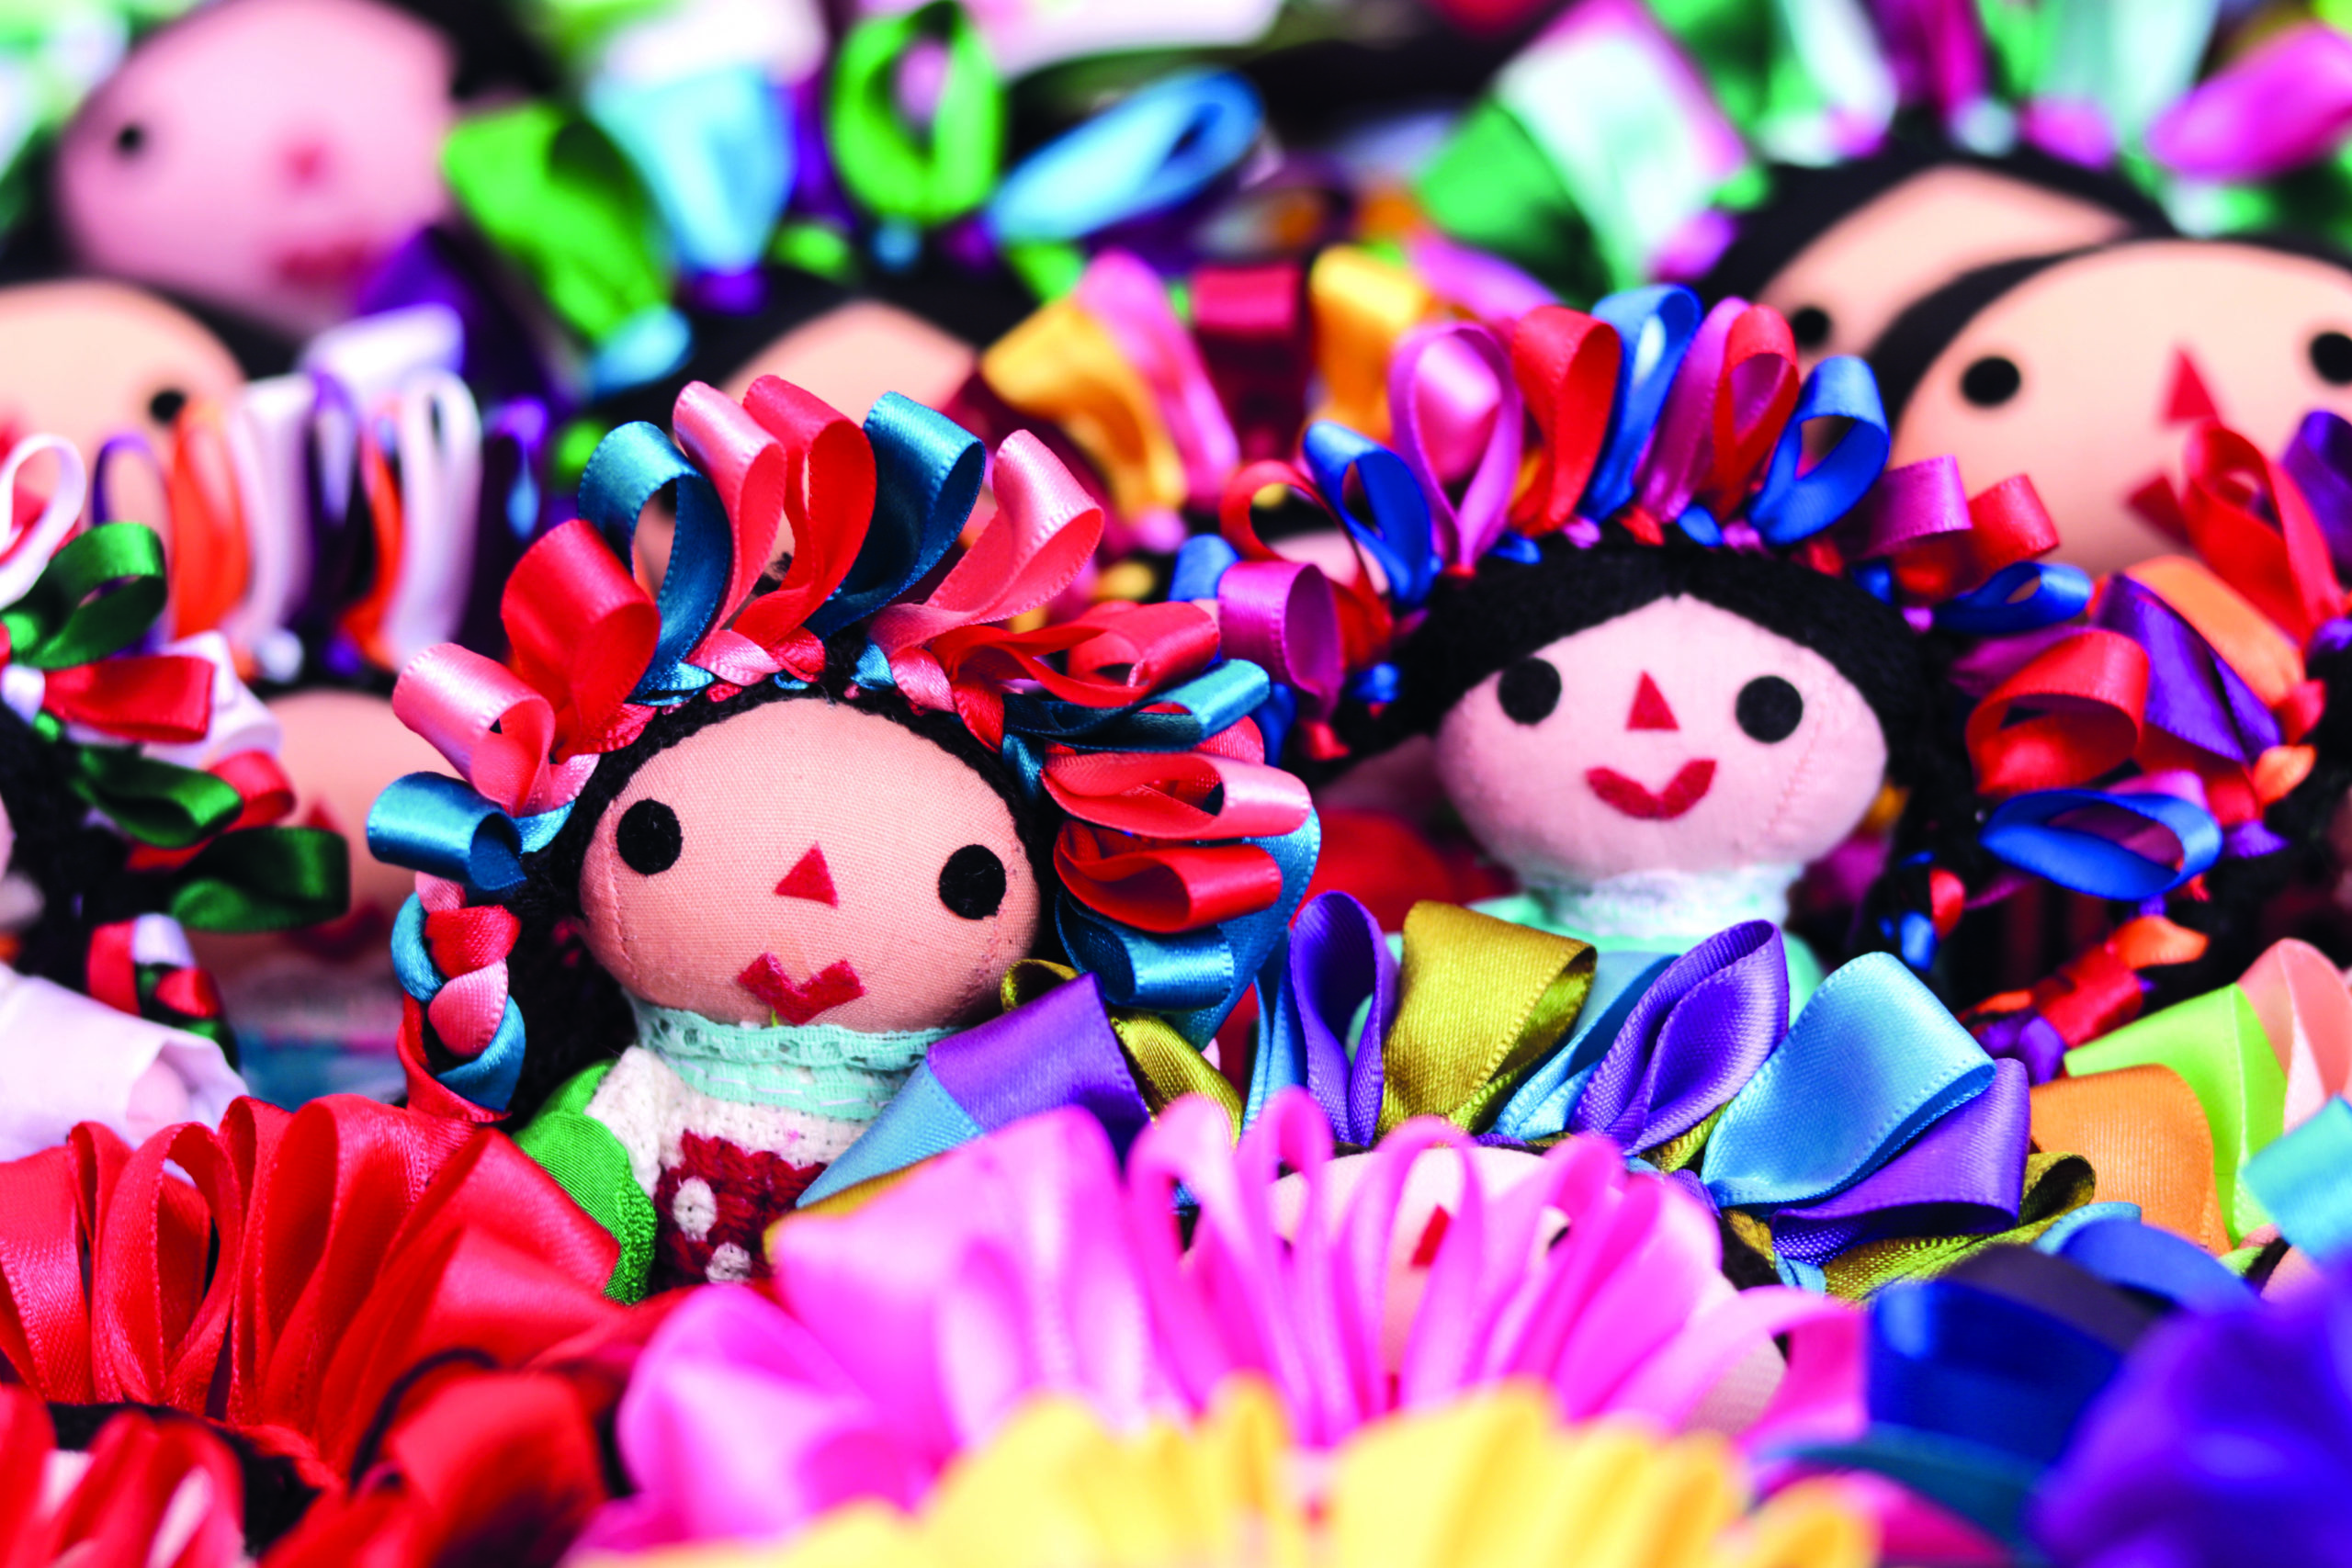 DE AMEALCO PARA EL MUNDO  La muñeca de Amealco Lele es el juguete artesanal más popular del pueblo otomí. Algunas tienen brazos y piernas articulados. La estructura de alambre es lo que más tiempo lleva elaborar, seguido del bordado en punto de cruz de su colorida vestimenta.